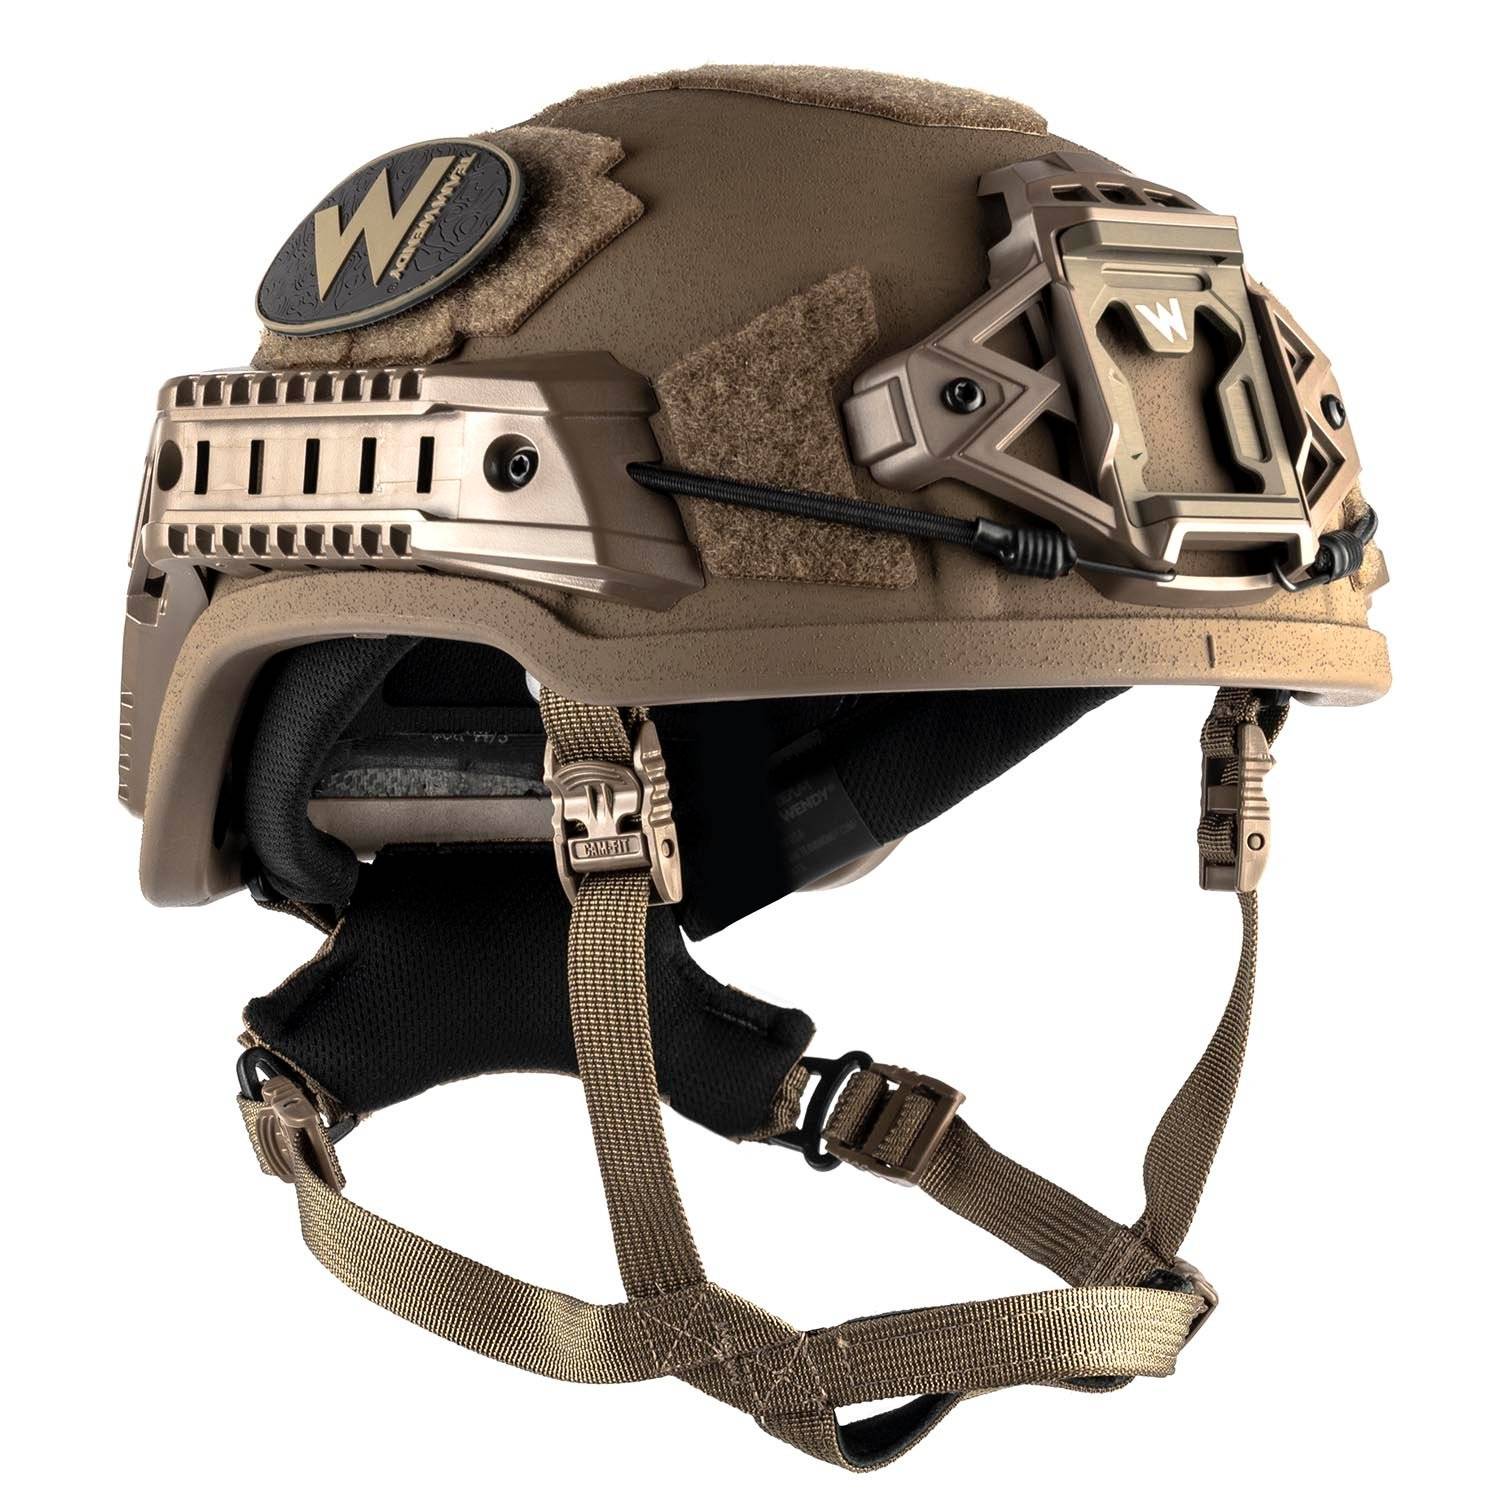 Team Wendy Epic Specialist Ballistic Helmet